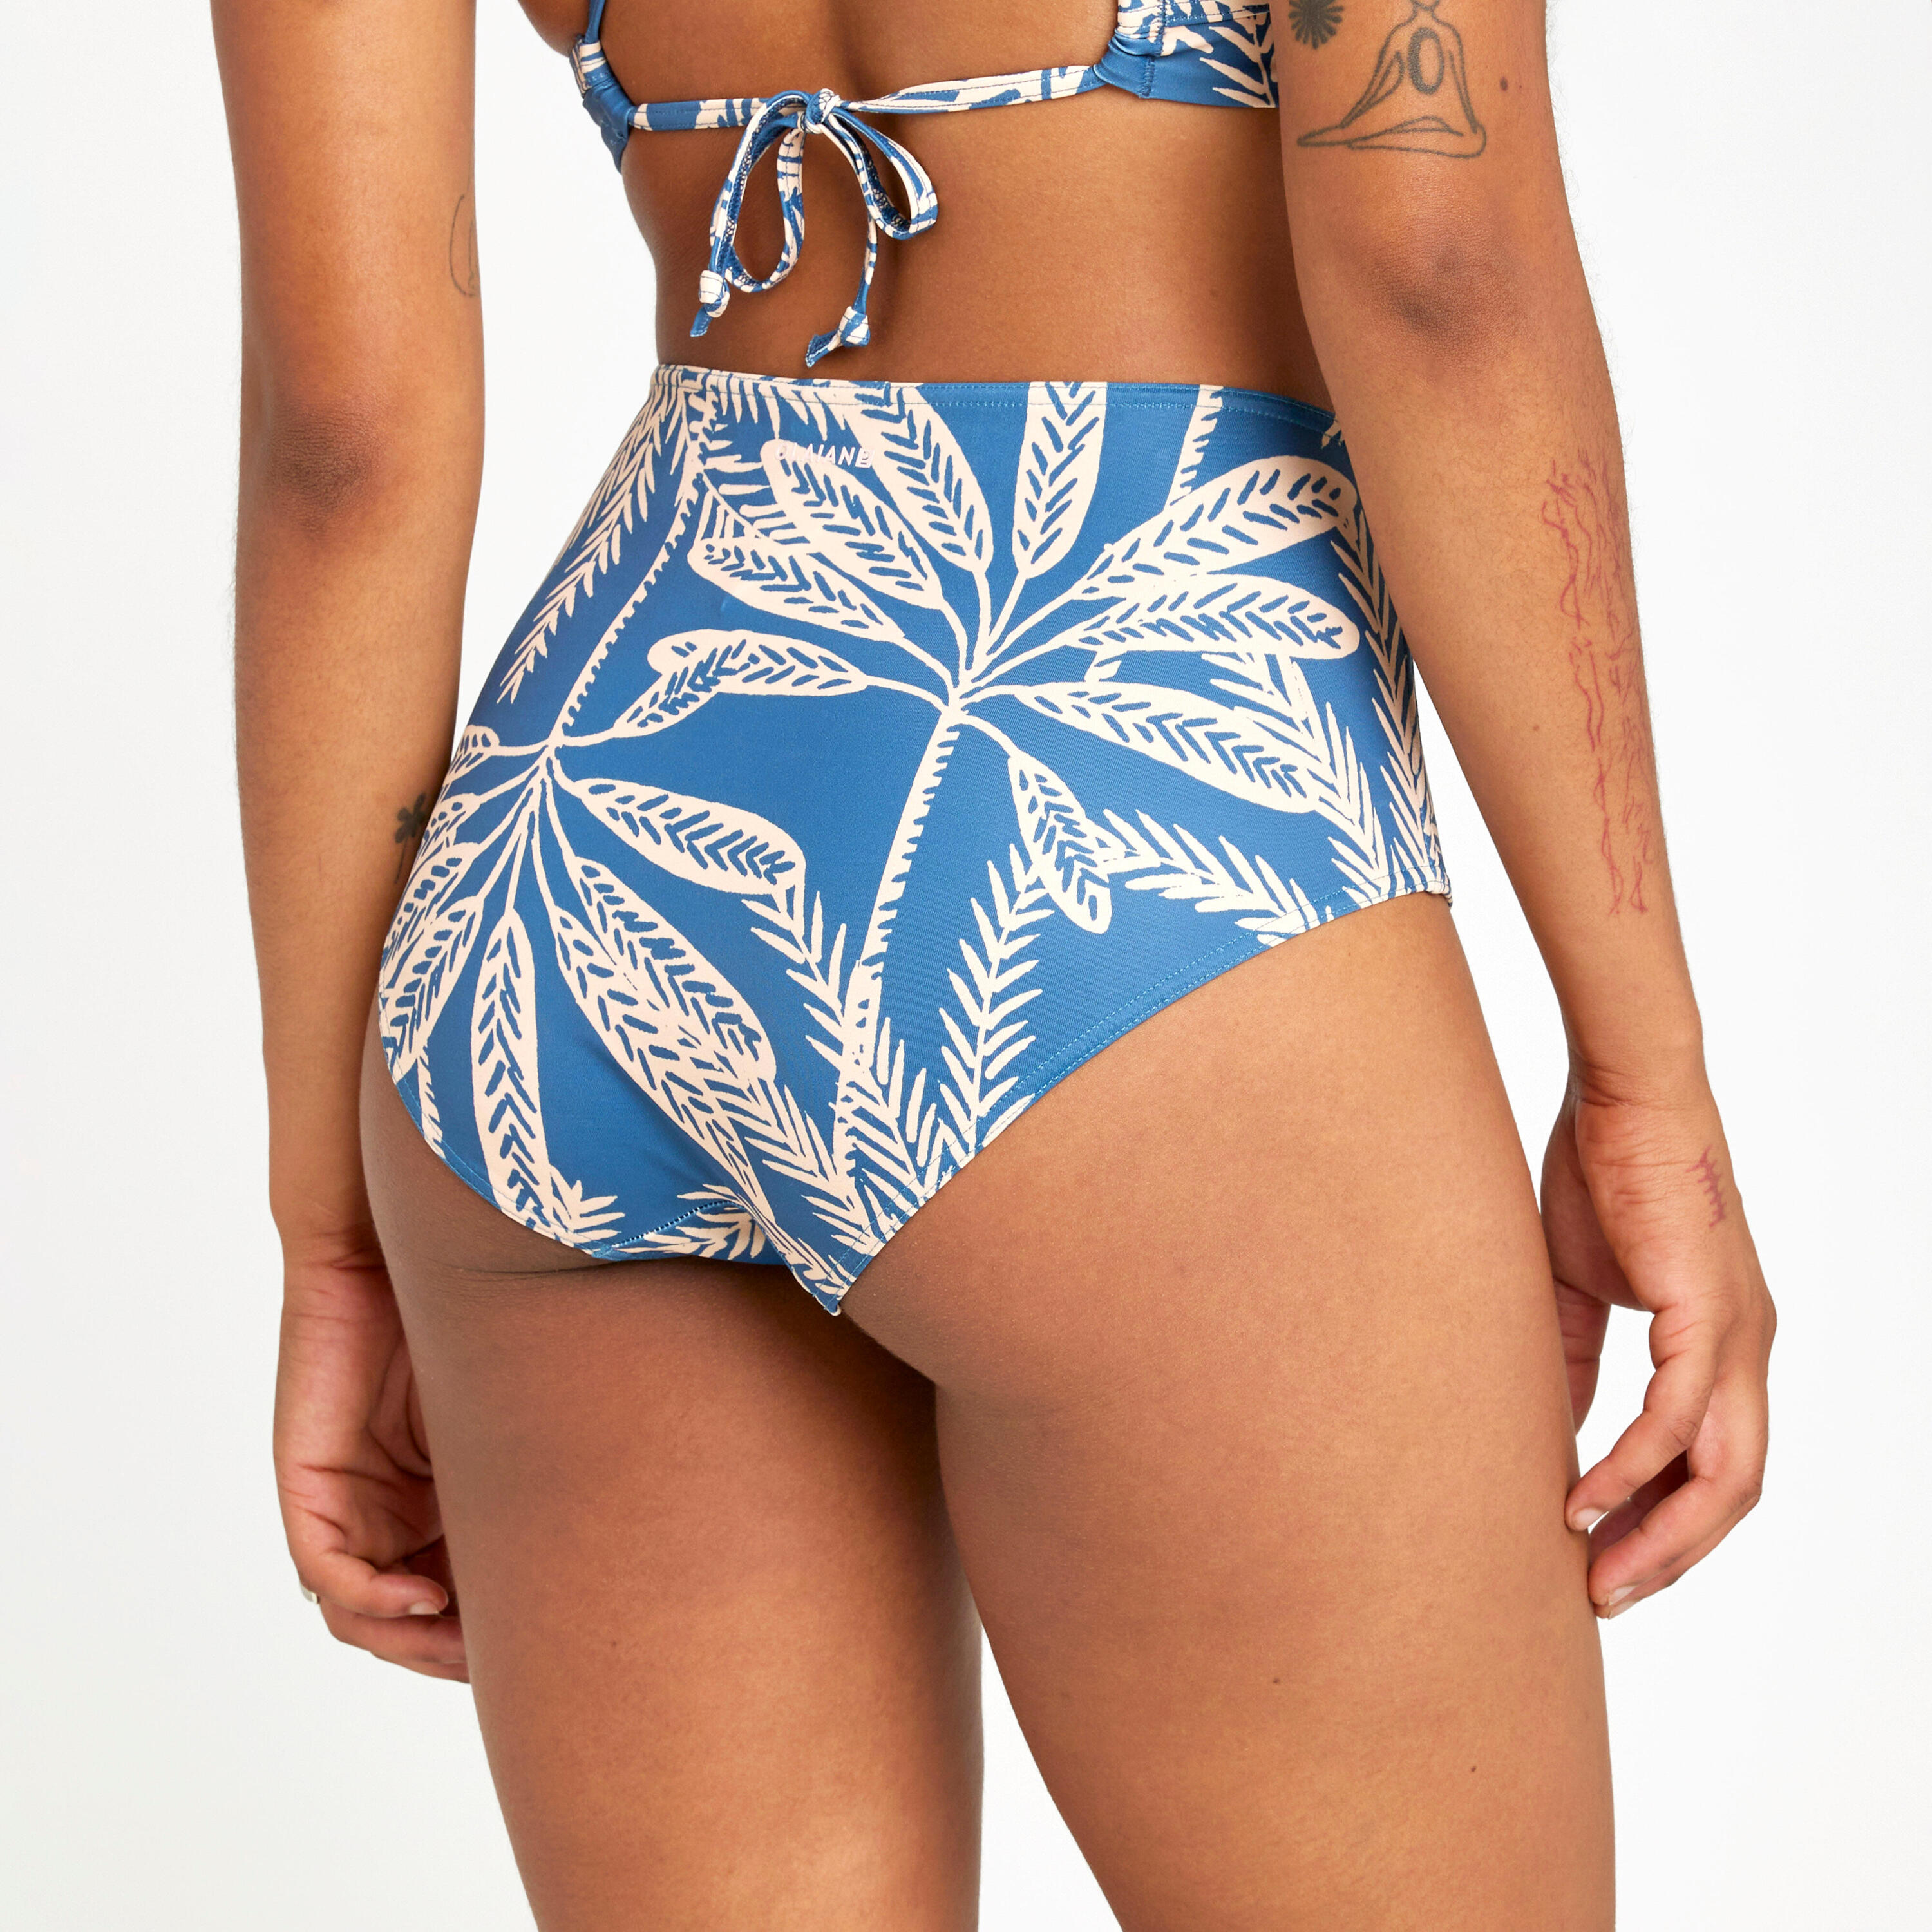 Women's high-waisted briefs swimsuit bottoms - Romi palmer blue 4/4